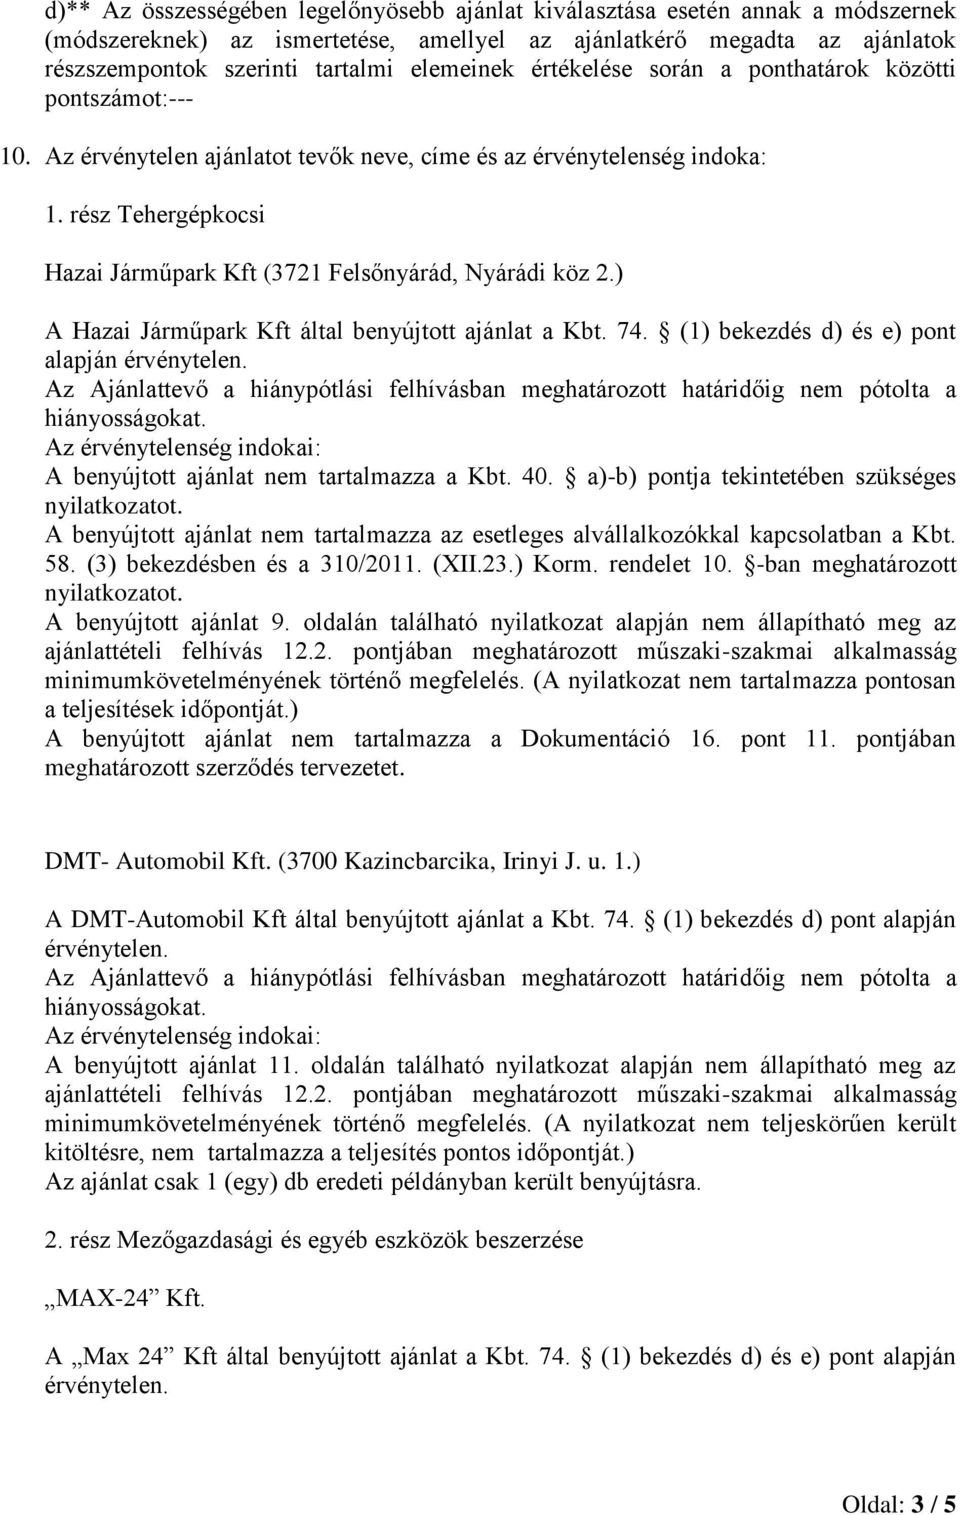 ) A Hazai Járműpark Kft által benyújtott ajánlat a Kbt. 74. (1) bekezd d) e) pont alapján érvénytelen.